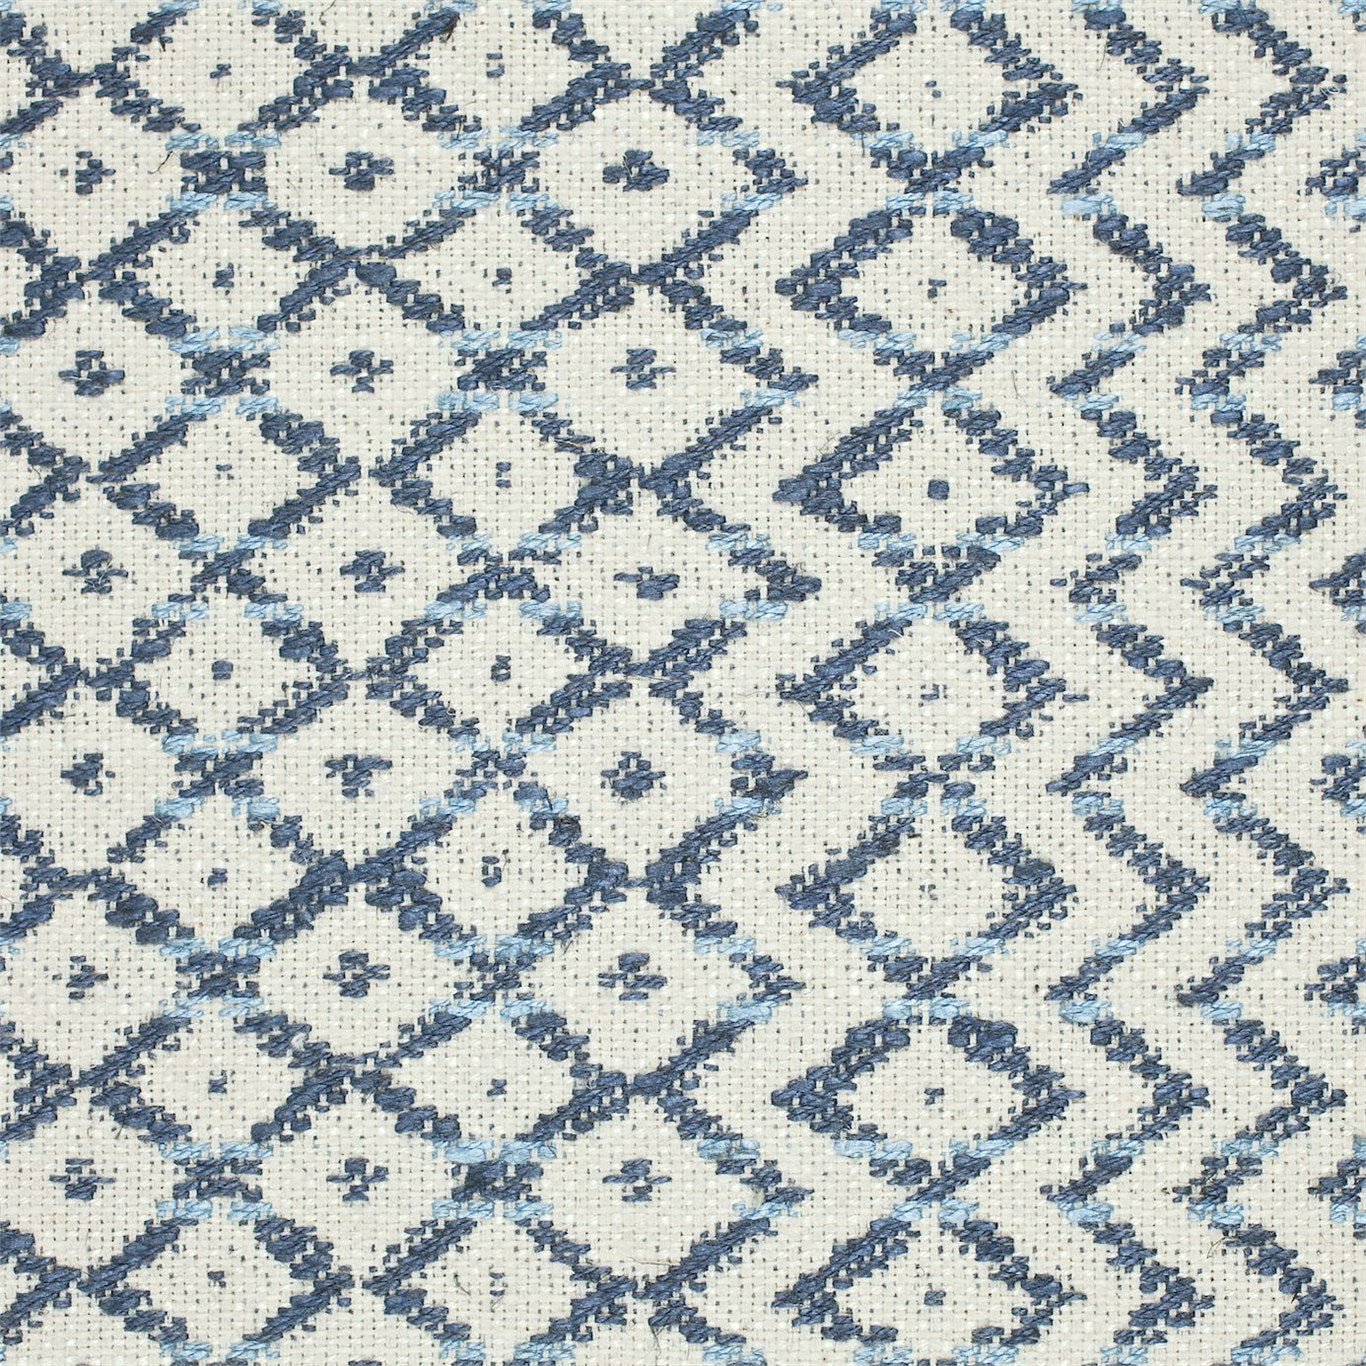 Cheslyn Fabric by Sanderson - DCLO232032 - Indigo/Ivory